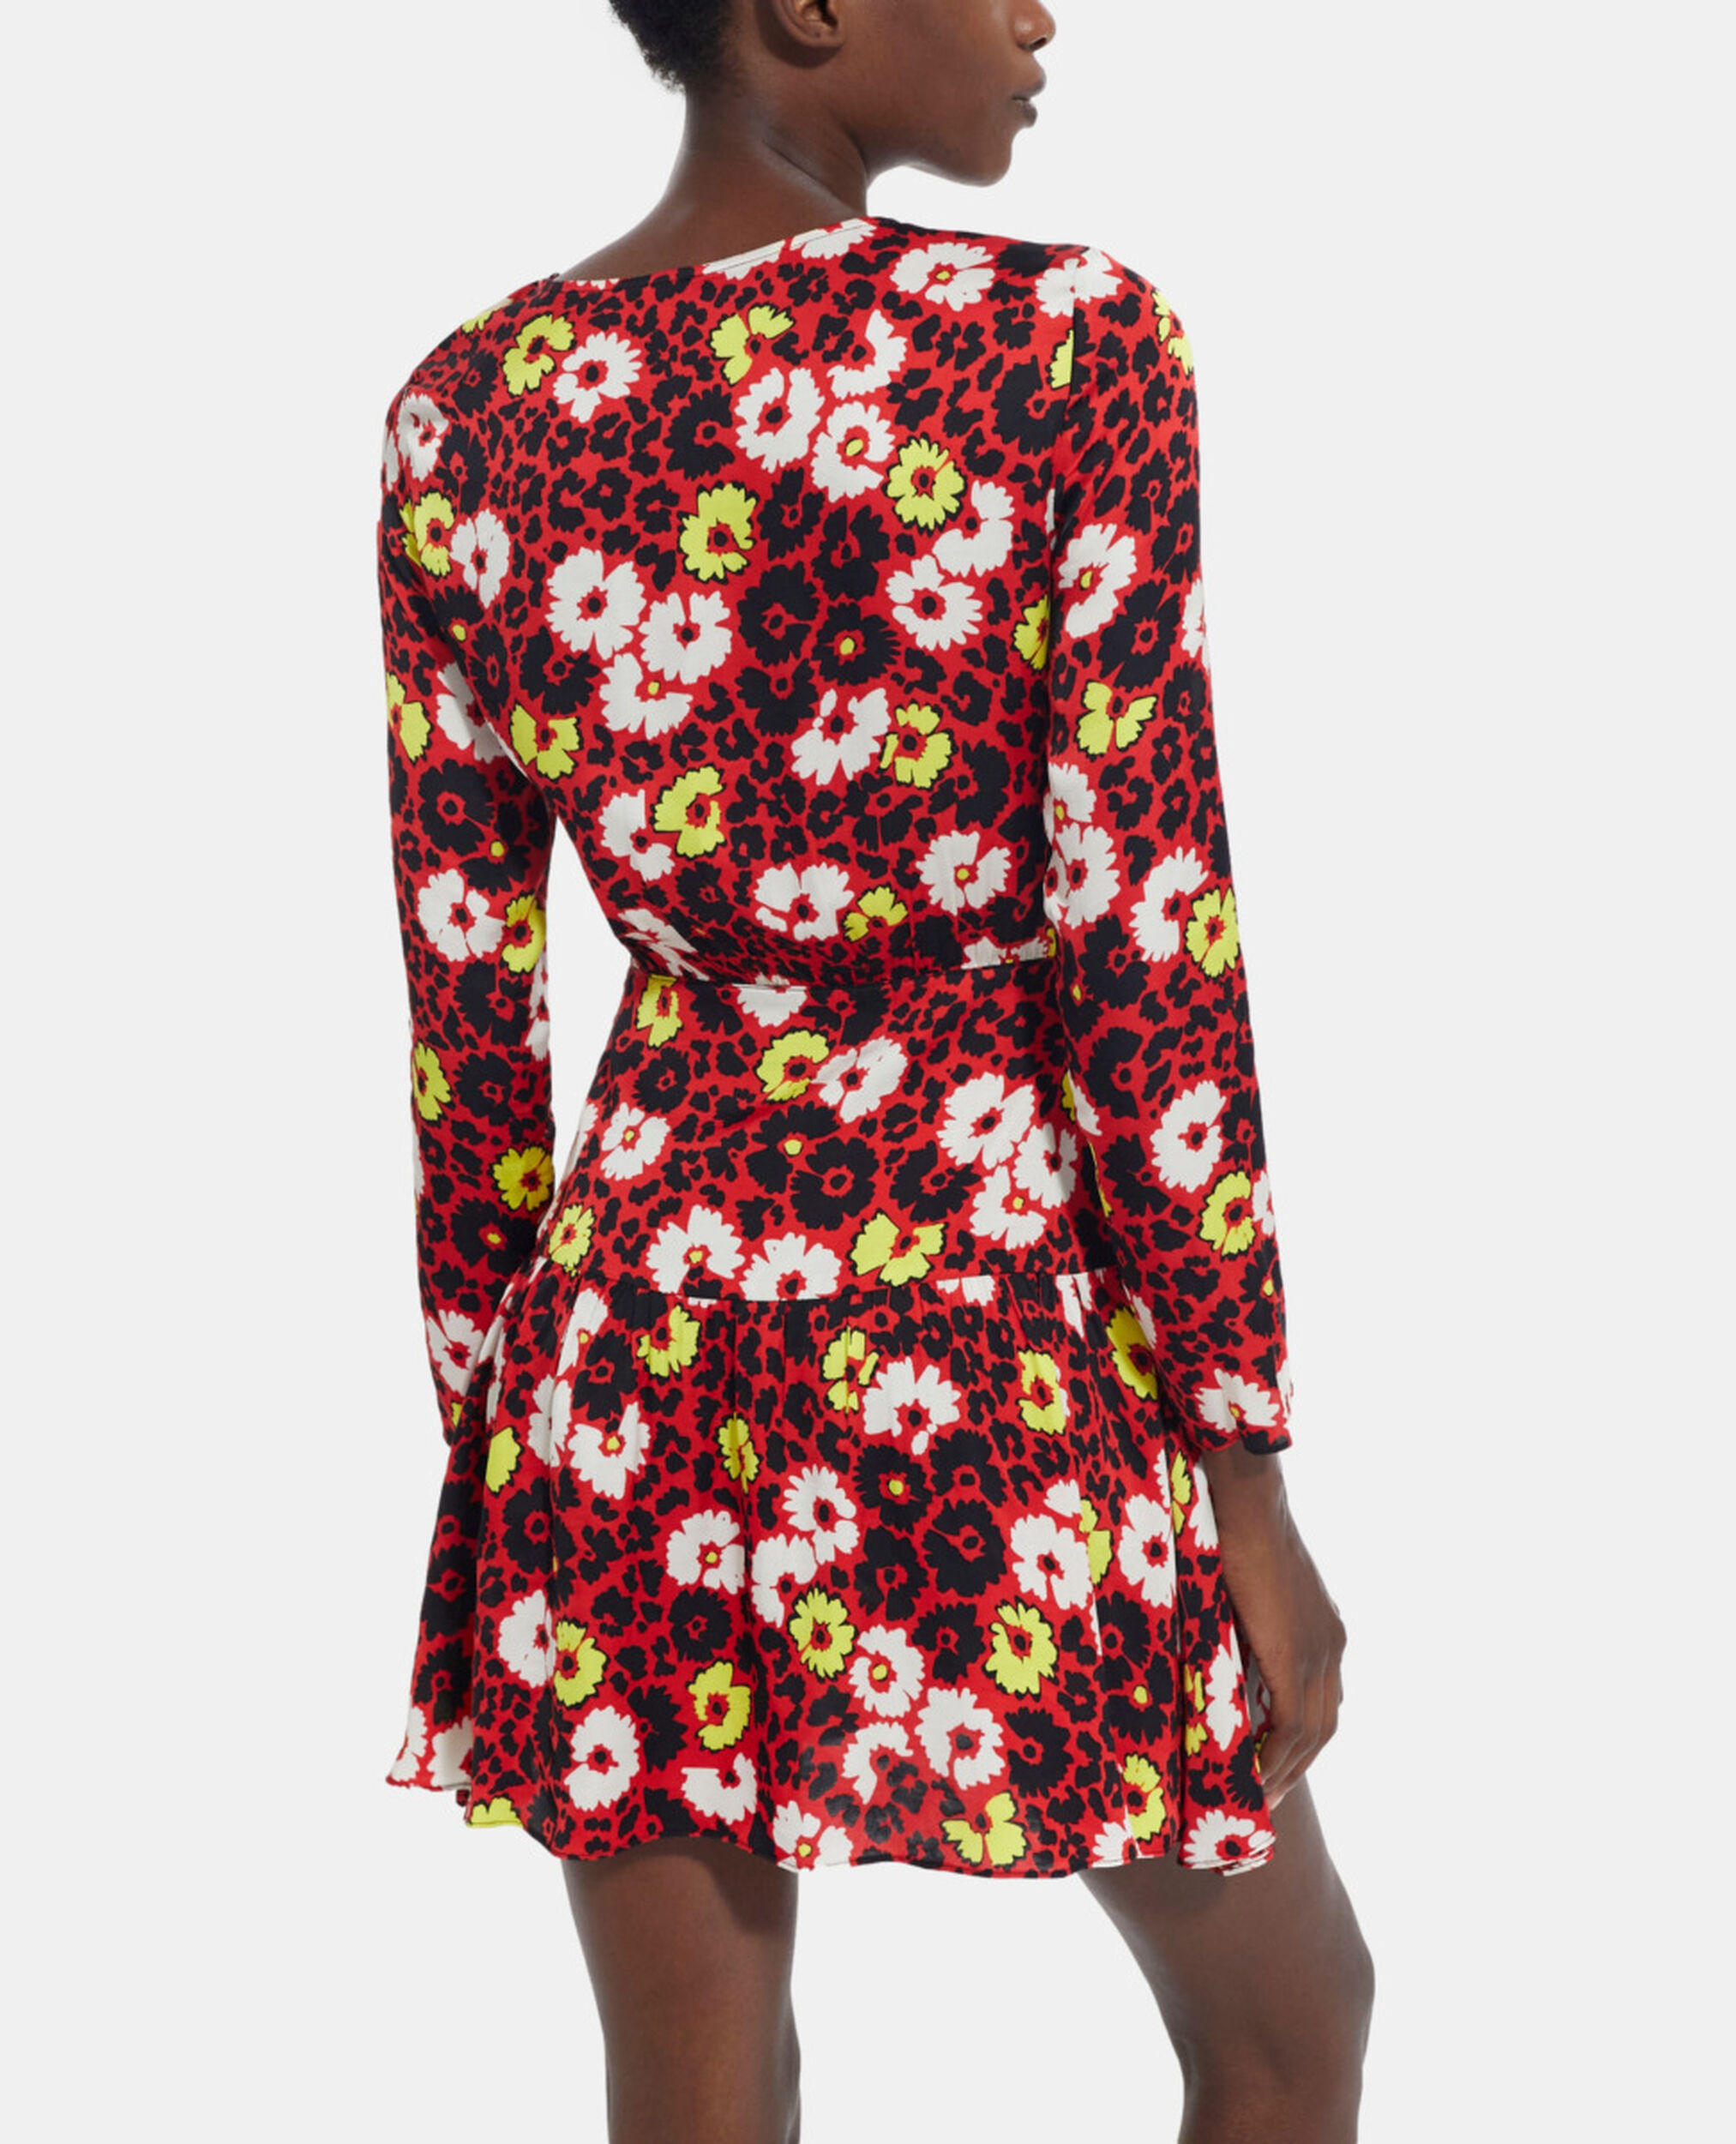 Vestido corto estampado floral, RED / YELLOW, hi-res image number null